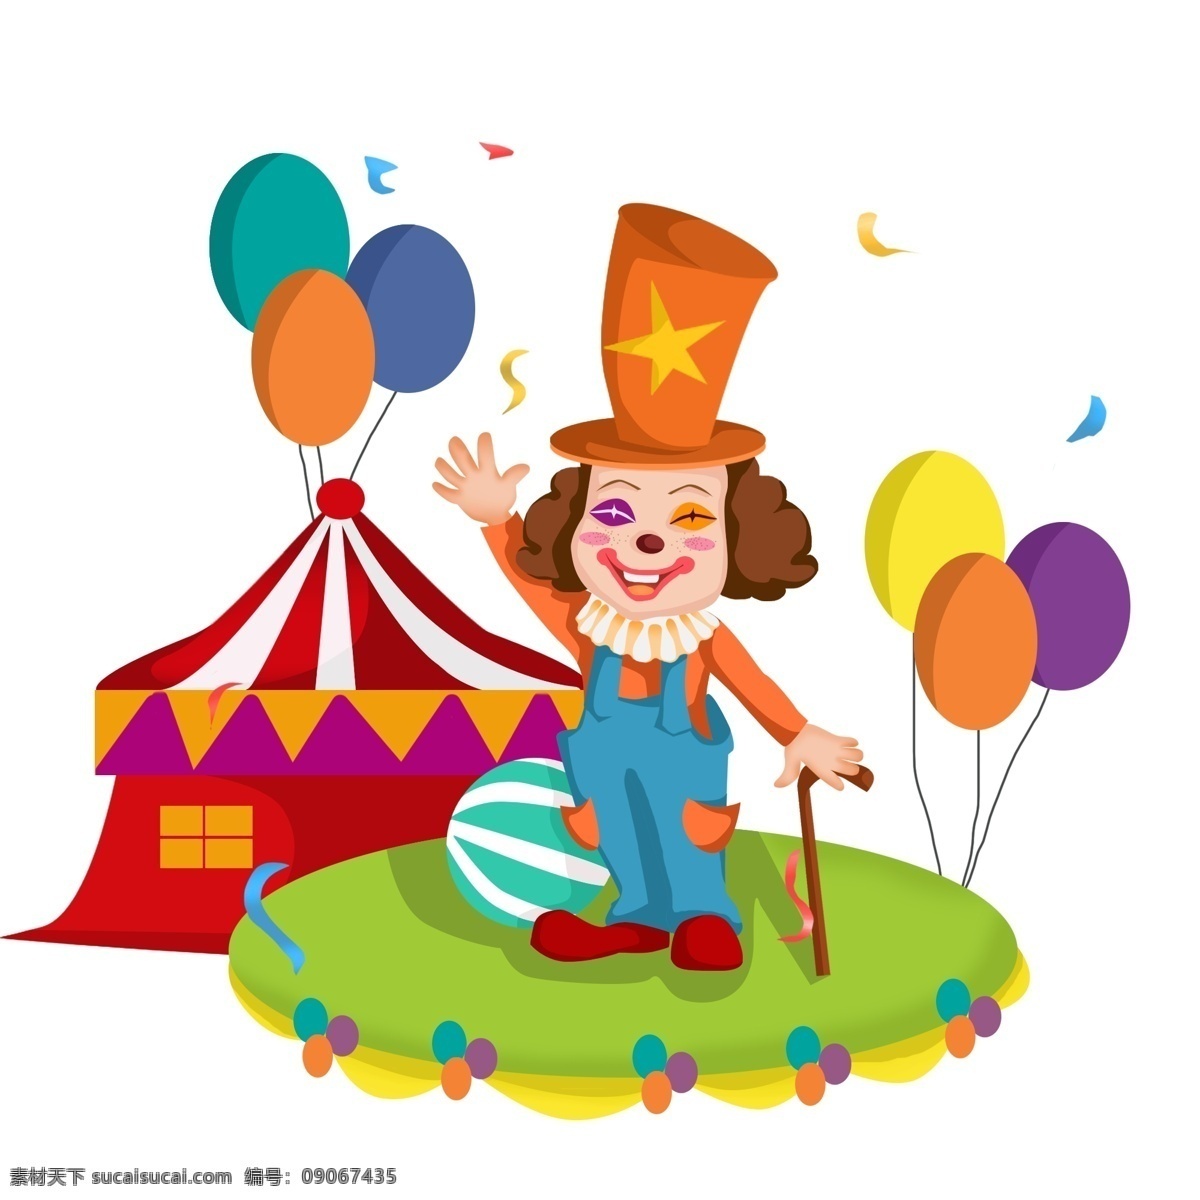 商用 高清 手绘 卡通 小丑 元素 气球 可商用 皮球 彩色气球 拐杖 卡通人物